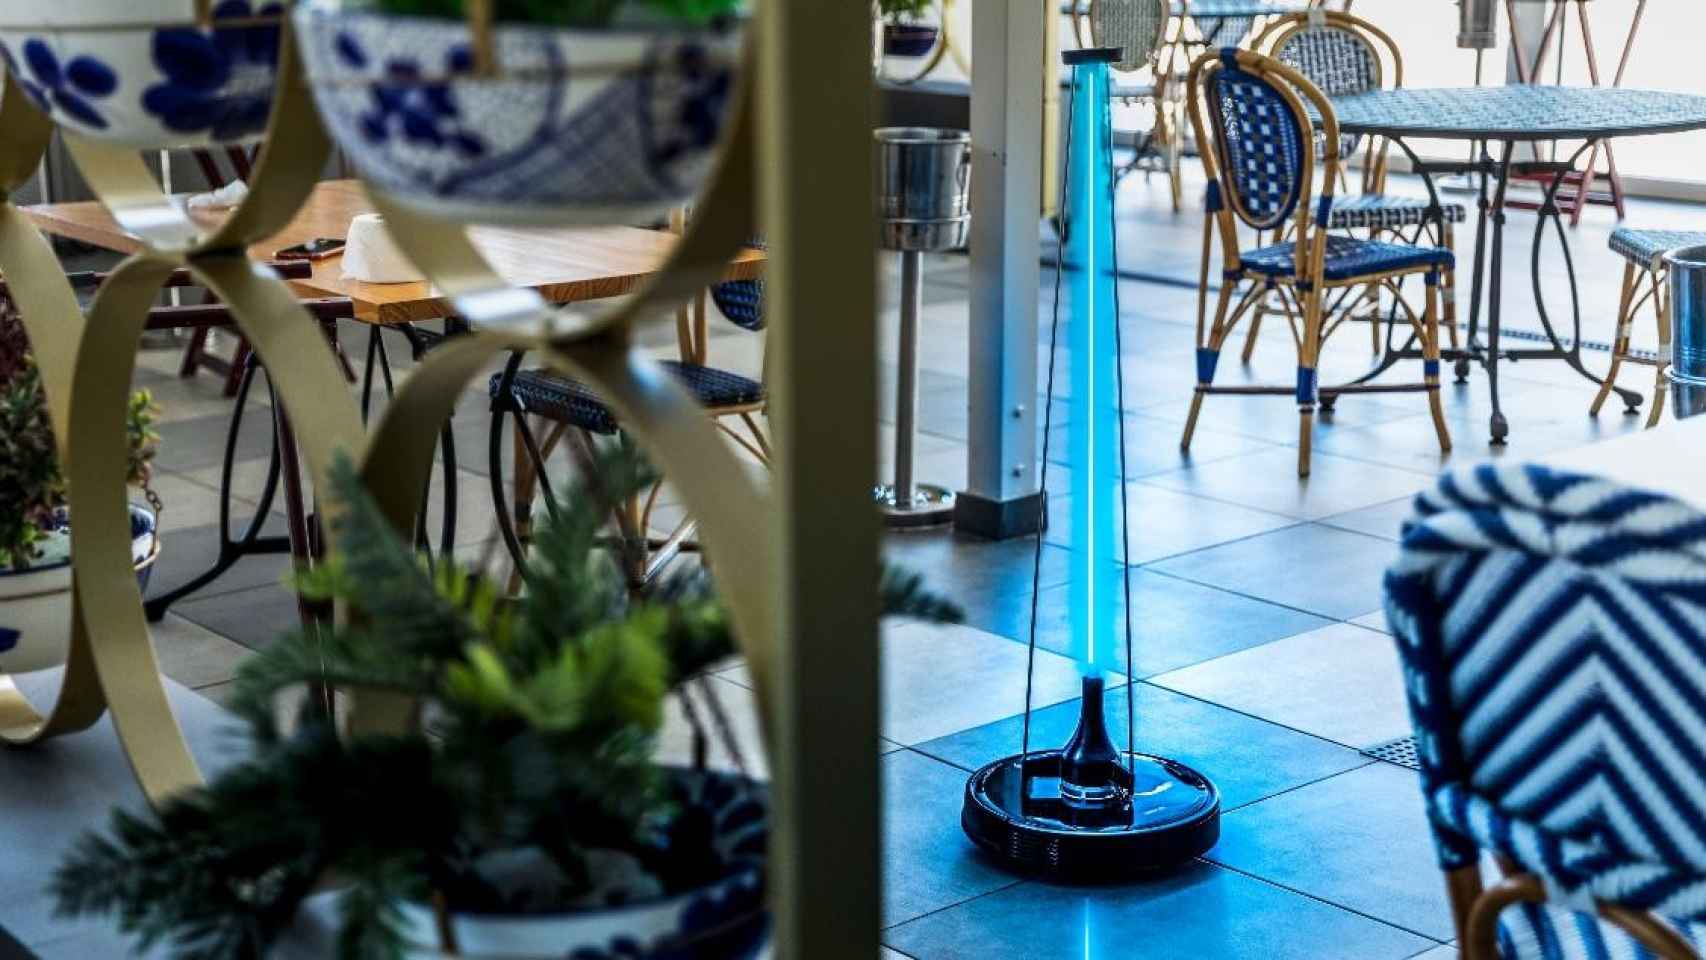 El robot Conga Apolo en un restaurante / CECOTEC